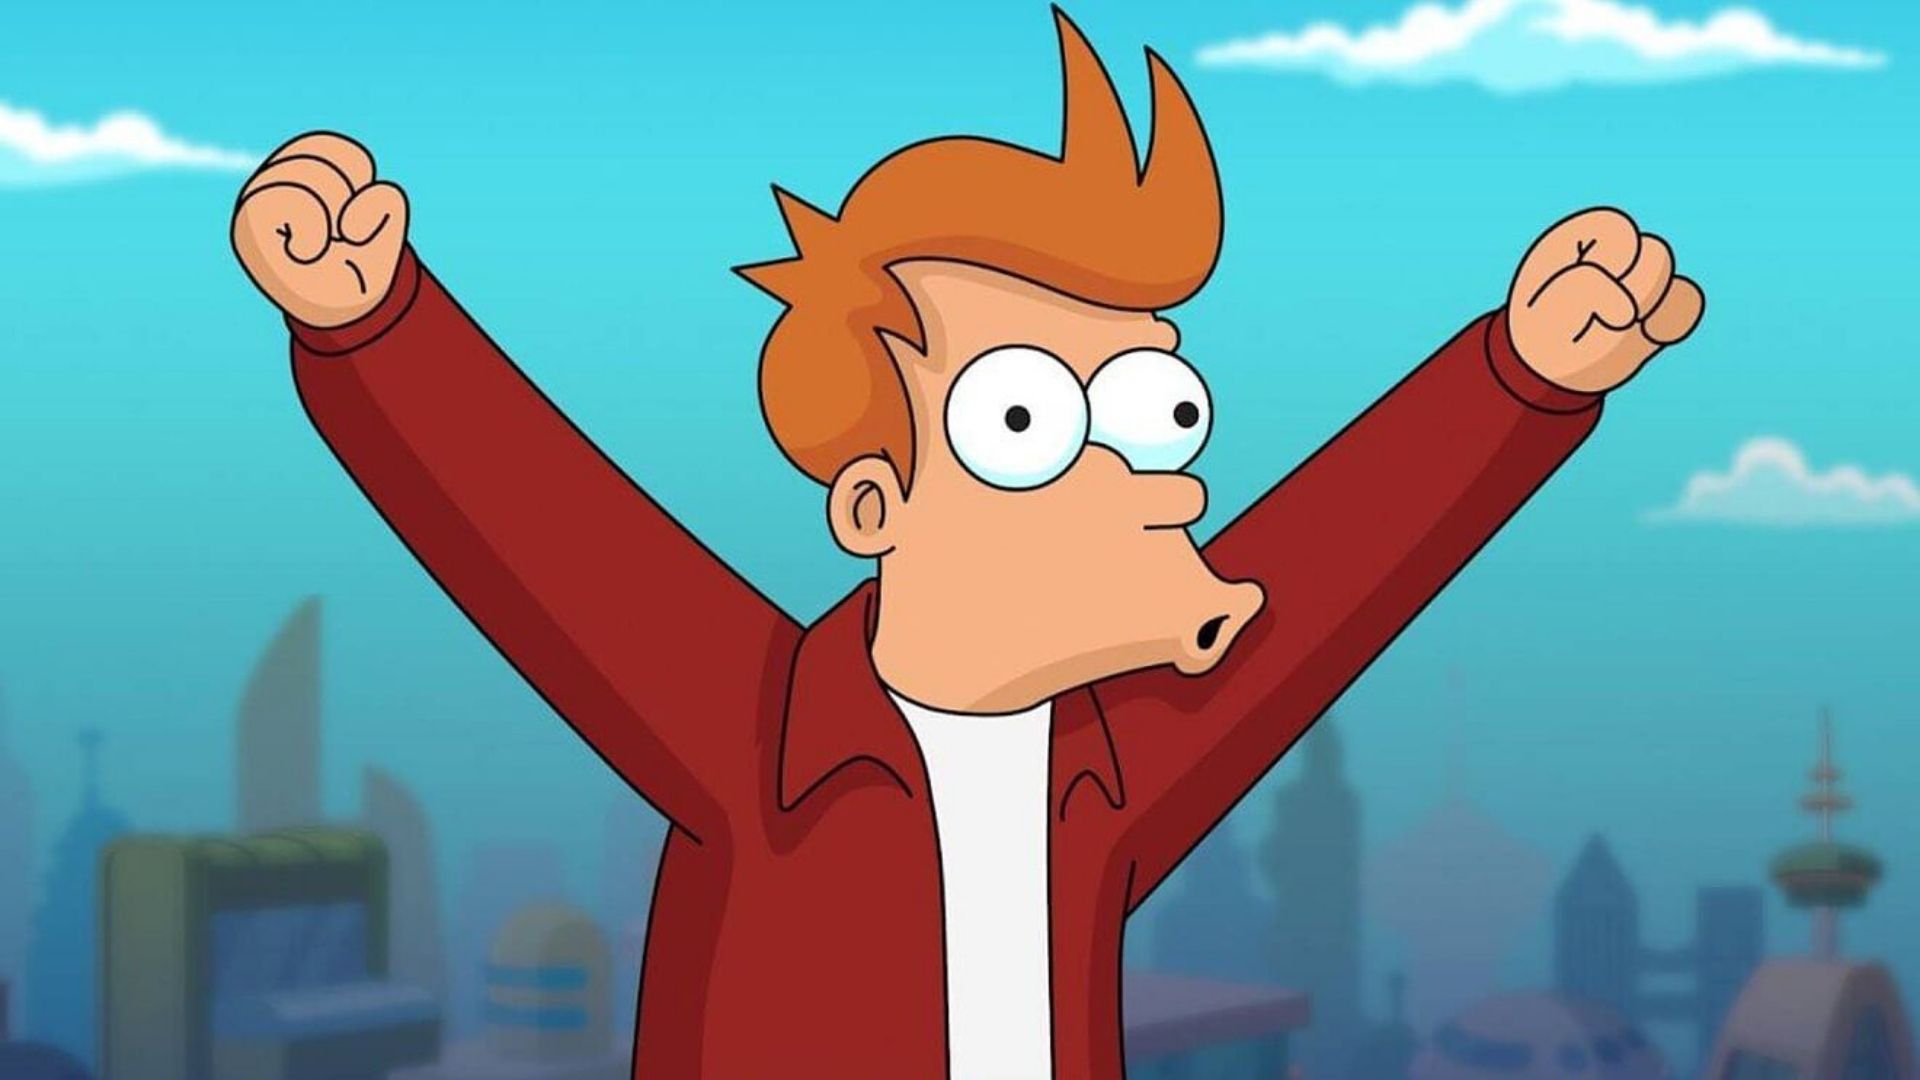 La mítica serie Futurama regresa con nuevos episodios